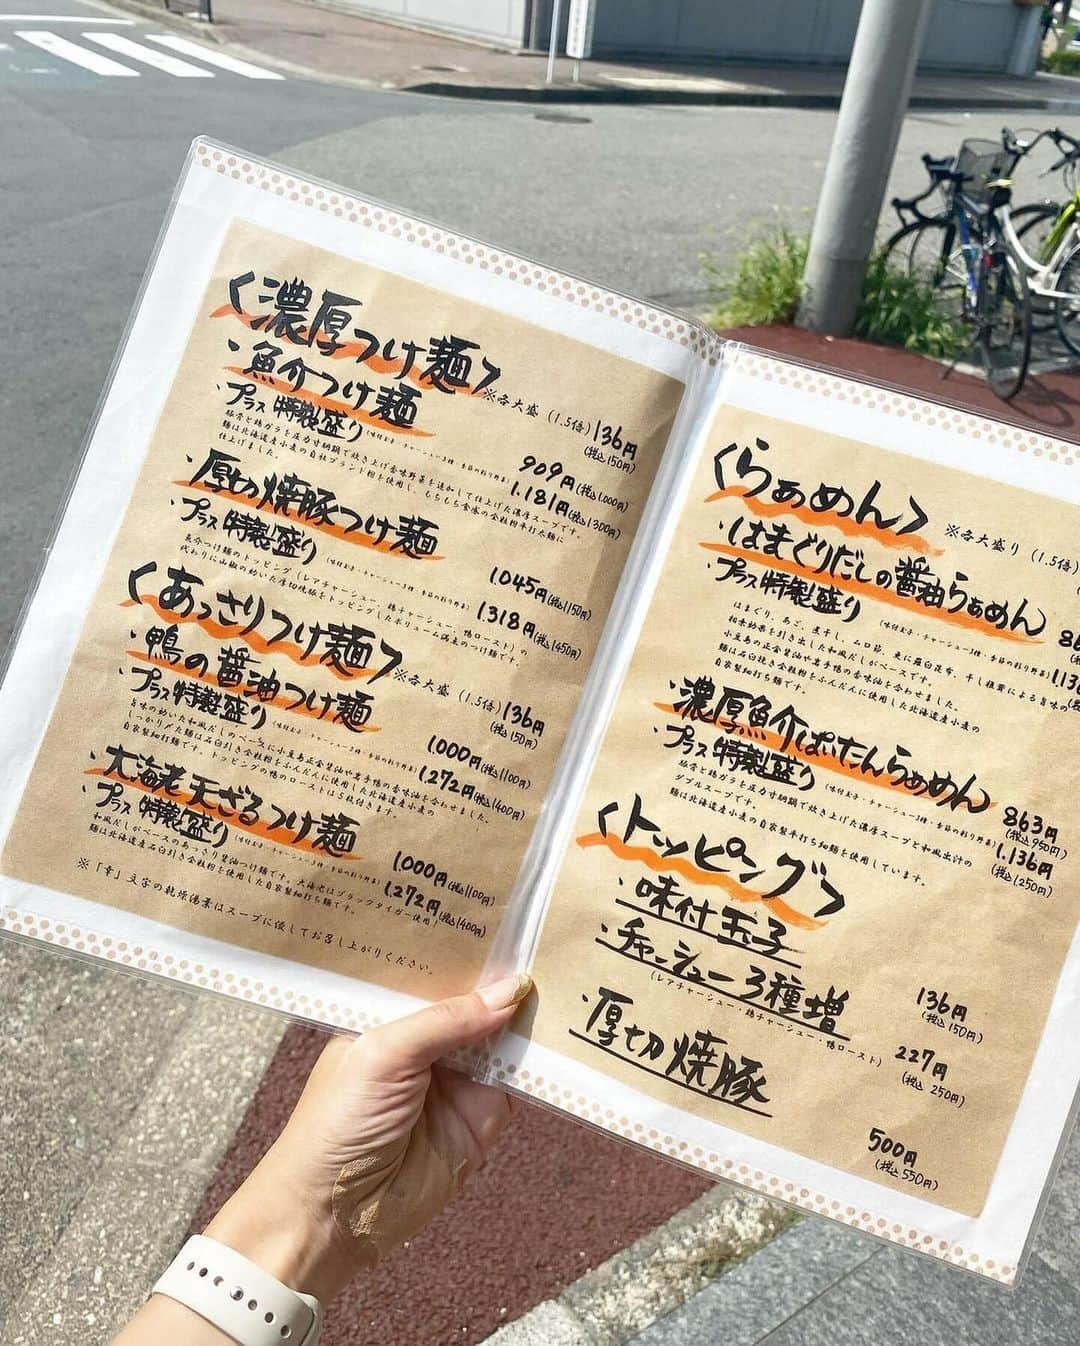 ナゴレコさんのインスタグラム写真 - (ナゴレコInstagram)「📍「麺家 幸先坂」 ･････････････････････････････････････････  あわあわのクリーミーなつけ麺🍜💕  今日は鶴舞駅の近くにある麺処「麺家 幸先坂」さんをご紹介！ 「麺家 幸先坂」さんでは、自家製麺やこだわりの出汁を使ったつけ麺やラーメンがとても人気✨  お店を訪れたらぜひ食べたいのが、このクリーミーなつけ麺！ ほのかに泡立つつけ汁が食欲をそそります🔥  スープが絡みやすい少し平たい麺ももっちりとしていてとても美味しそう🍜 つけ麺の他にも、ぱいたんラーメンやシンプルなお醤油ラーメンなど、いろんな味のラーメンが楽しめるみたい🥢  気になった人はぜひお店のアカウントをチェックしてみてね🔖  ┈┈┈┈┈┈┈┈┈┈┈┈┈┈┈┈┈┈┈  🍤名古屋のローカルグルメメディア【ナゴレコ】🍤  名古屋人がレコメンドする本当に美味しい名古屋めし🥢 これさえフォローしておけば、街の流行りがきっとわかる◎ 100名以上の編集部で作り上げる、名古屋エリア最大規模のグルメメディアです📝  他の投稿はこちらから👉 @nagoya_food  ┈┈┈┈┈┈┈┈┈┈┈┈┈┈┈┈┈┈┈  素敵な投稿にタグ付けしていただきありがとうございます✨  #ナゴレコ で、あなたの投稿をリポスト！ webサイト「ナゴレコ」もチェックしてね👀 ･････････････････････････････････････････  ☞ photo by （ @n__tabelog ）さん  . 🔖麺家 幸先坂(鶴舞)  鶴舞駅からすぐの所にある 人気のラーメン屋さん🍜✨ 【麺家 幸先坂】>> @menya_saisakizaka ずっと行きたくてママ友と行ってきたよ😍  .  ✼••┈┈┈┈┈┈••✼••┈┈┈┈┈┈••✼  ▶︎魚介つけ麺(¥1,000) ▶︎濃厚魚介ぱいたんらぁめん(¥950)  ✼••┈┈┈┈┈┈••✼••┈┈┈┈┈┈••✼  .  私が食べたのは【魚介つけ麺】🎶 +300円で特製盛りにもできたんだけど すでに食後だったから今回はこちら😆✨  ぐつぐつしてて熱々な濃厚なつけ汁🔥 魚介つけ麺だけど魚介の臭みは無し！ 濃厚だけど濃すぎず止まらなくなる😍🍜 もちもちの全粒粉平打ち太麺によーく絡んで あっという間にご馳走様でした🙏🏻💓  .  行ったのは平日11時半頃☀️ 既に満席で少し待ったよ〜🎶 帰る頃には外に行列出来てたから早めがおすすめ！ キレイな店内でおひとりさまも多かったよ🙆‍♀️ 私も今後1人で来れちゃうの確認できてよかった😁 鶏白湯もすごく美味しそうだったからまた行こう〜🤍  ････････････････････････････････････････････ 名古屋市中区千代田5-22-18 グランドメゾン鶴舞公園 1F ▶︎▶︎麺家 幸先坂(さいさきざか) @menya_saisakizaka ●営業時間 11:00～14:30 17:30～21:30 ●定休日 無 ●交通手段 JR鶴舞駅より徒歩1分 ●駐車場 無(近隣にコインパーキングあり) ････････････････････････････････････････････  おすすめのお店はこちら▶︎▶︎ n_tabelog 𖧷」11月15日 18時26分 - nagoya_food